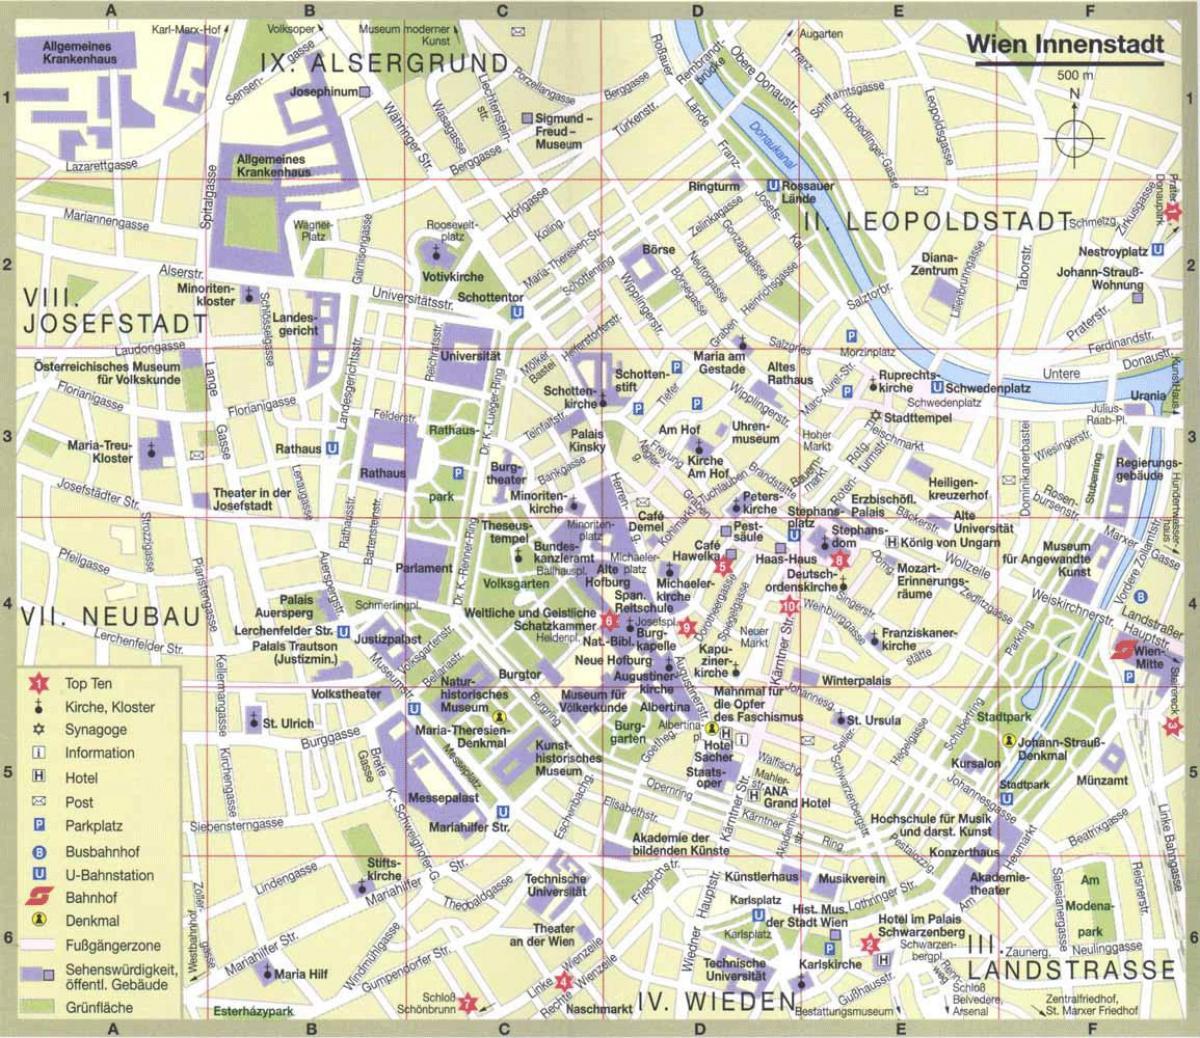 Վիեննա քաղաքի քարտեզը